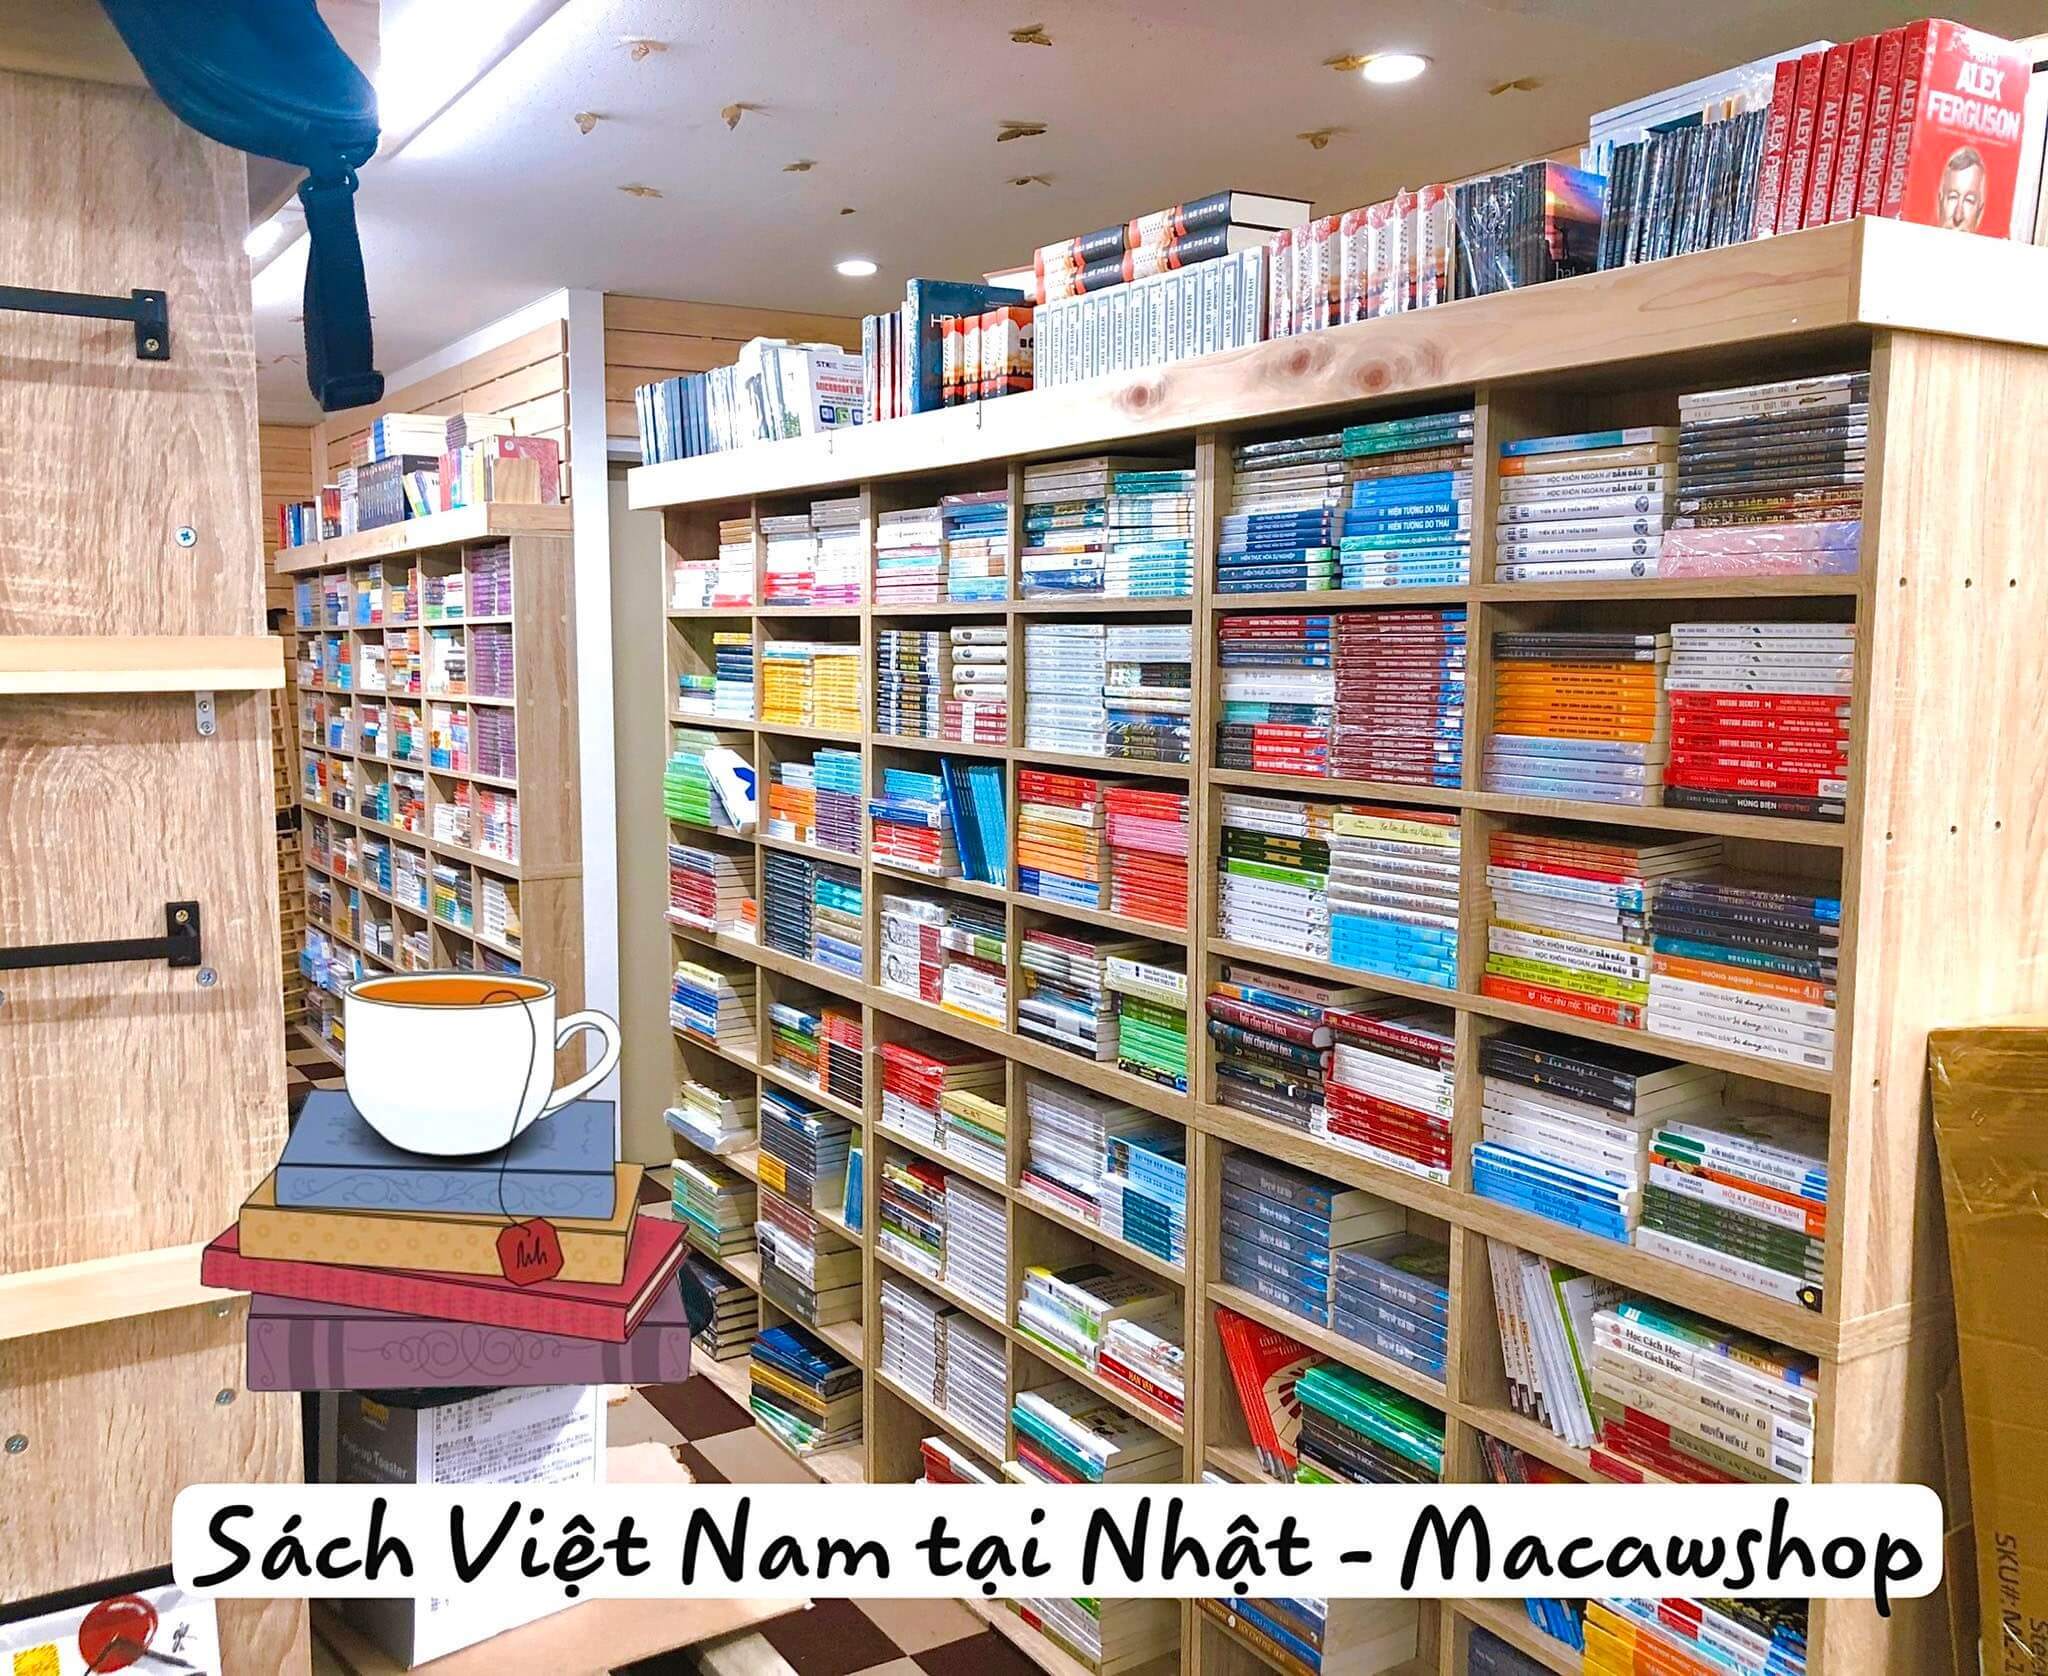 Cửa hàng Sách Việt Nam tại Nhật - Macawshop